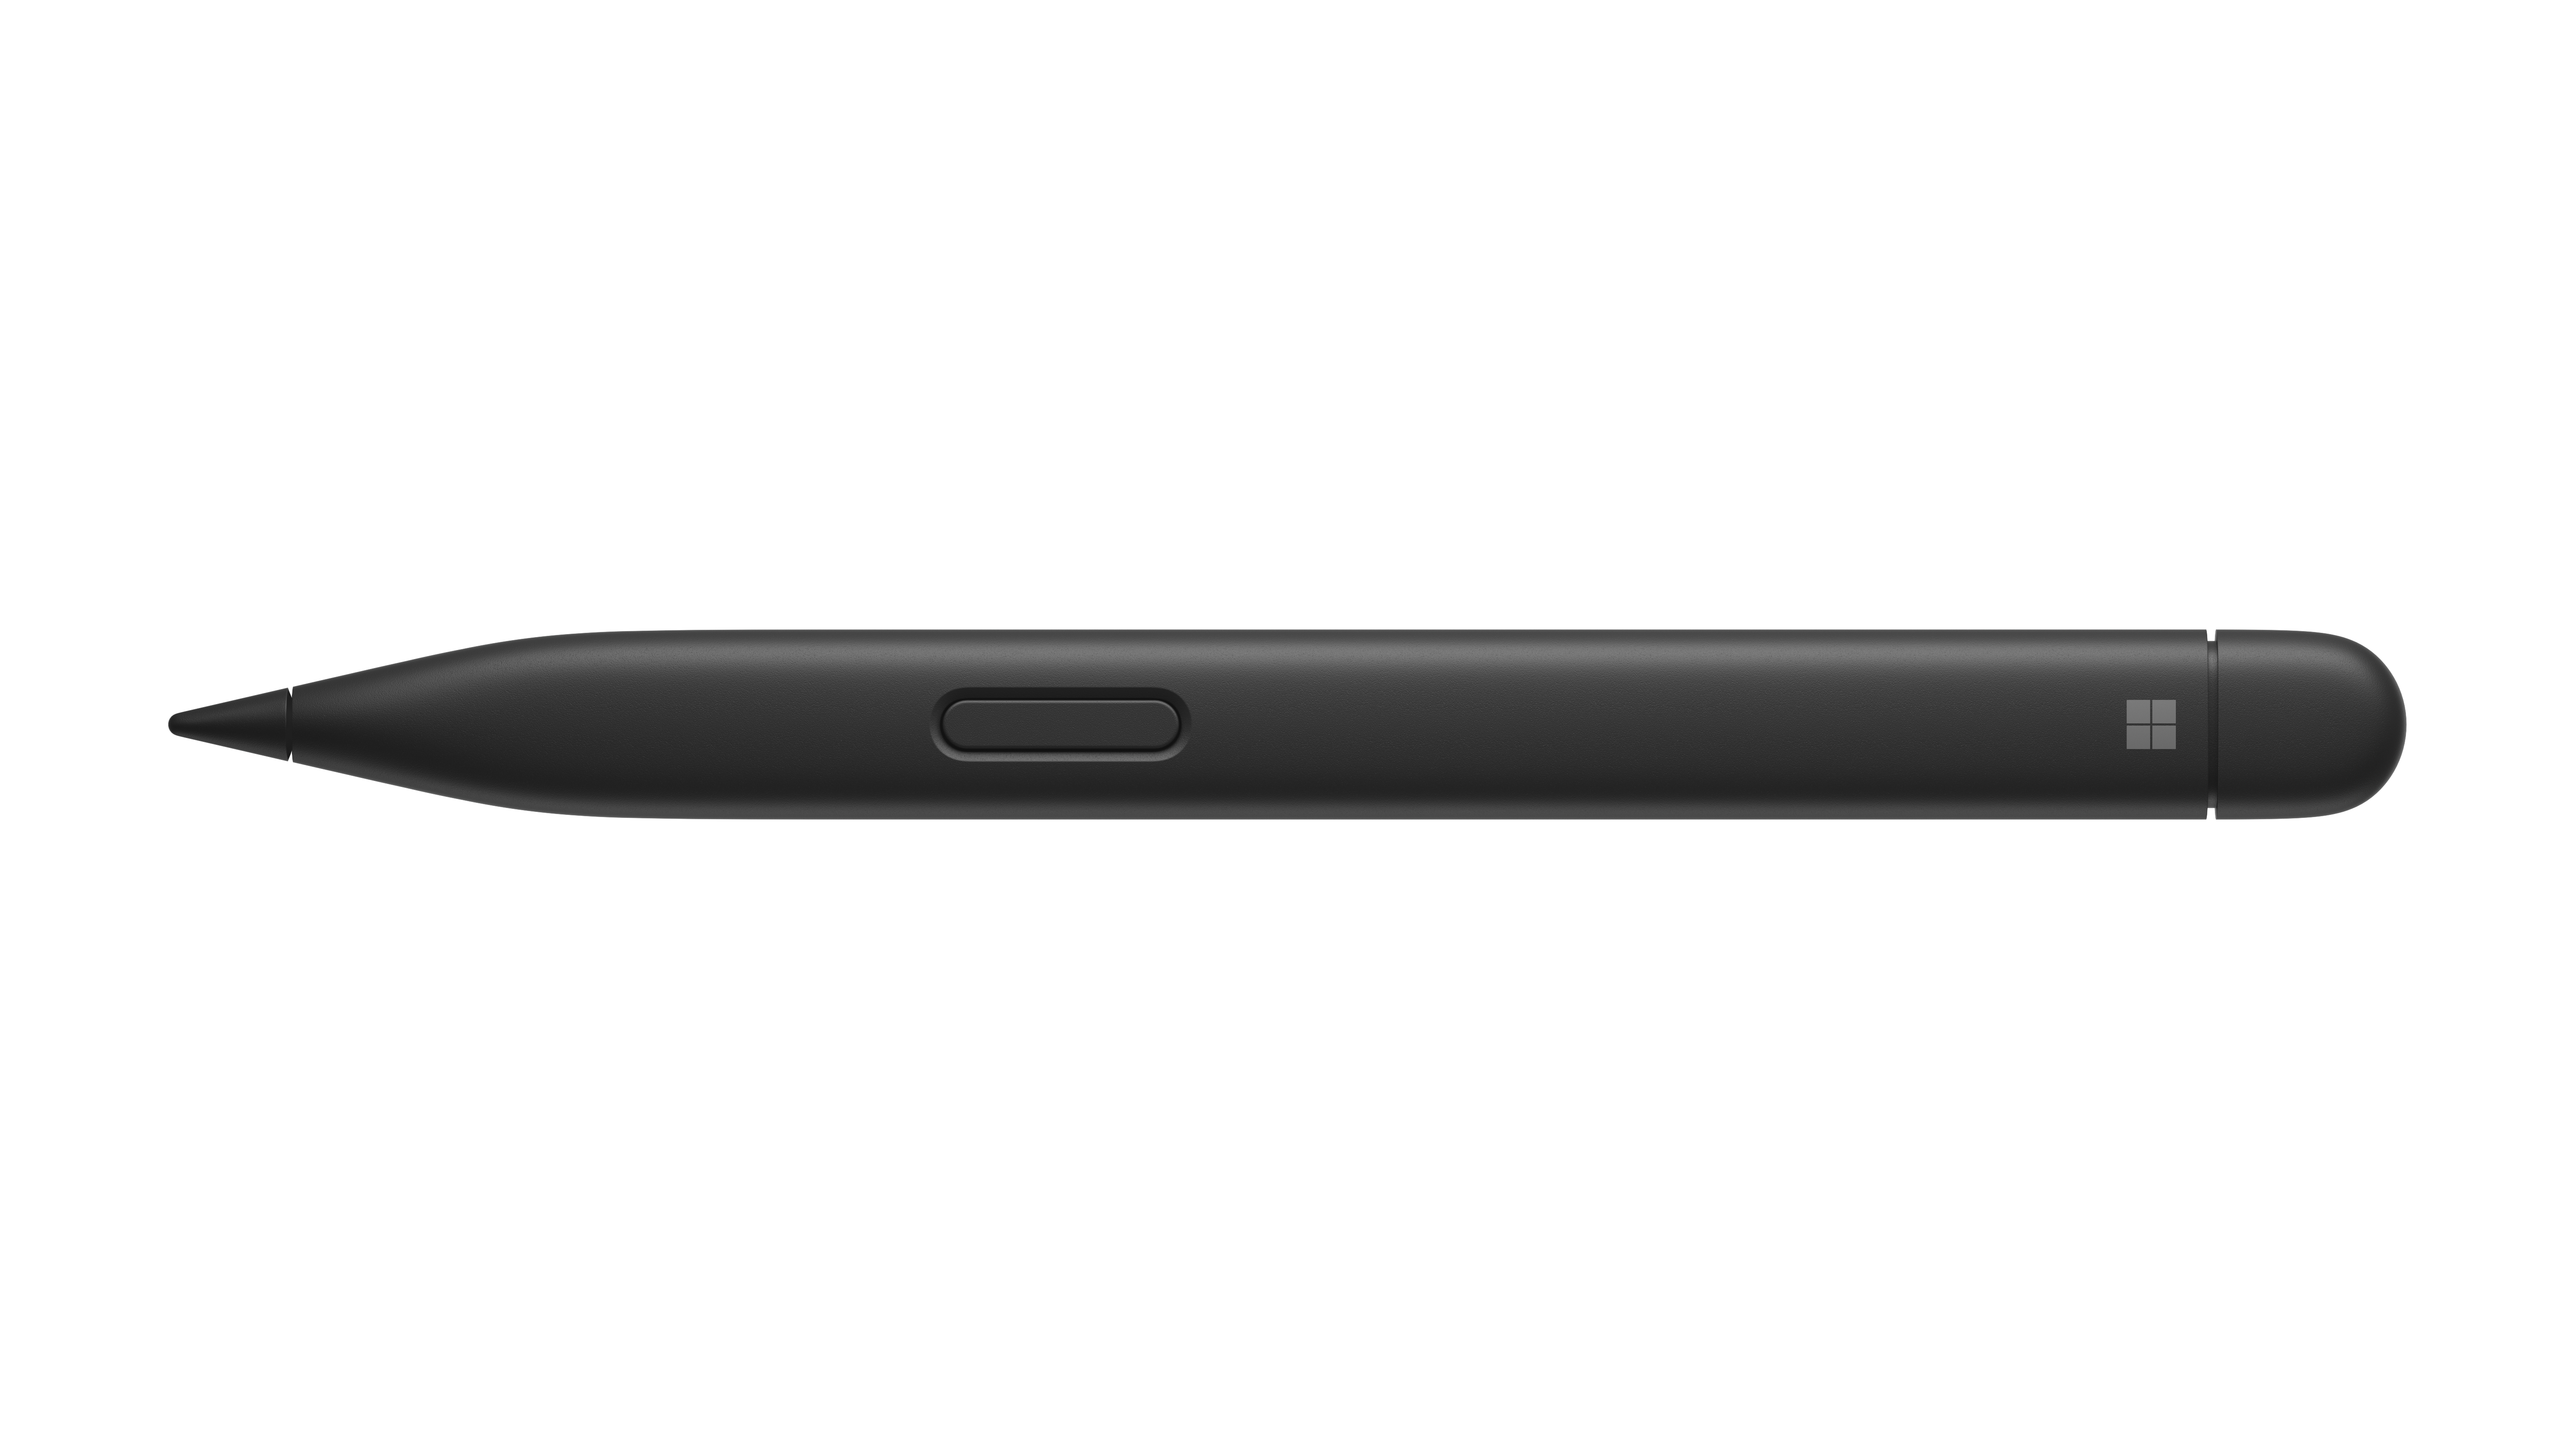 Microsoft Surface Slim Pen 2 - Aktiver Stylus - 2 Tasten - Bluetooth 5.0 - mattschwarz - kommerziell - für Surface Book, Book 2, Book 3, Go, Go 2, Go 3, Hub 2S 50", Hub 2S 85", Laptop, Laptop 2, Laptop 3, Laptop 4, Laptop Studio, Pro (Mid 2017)